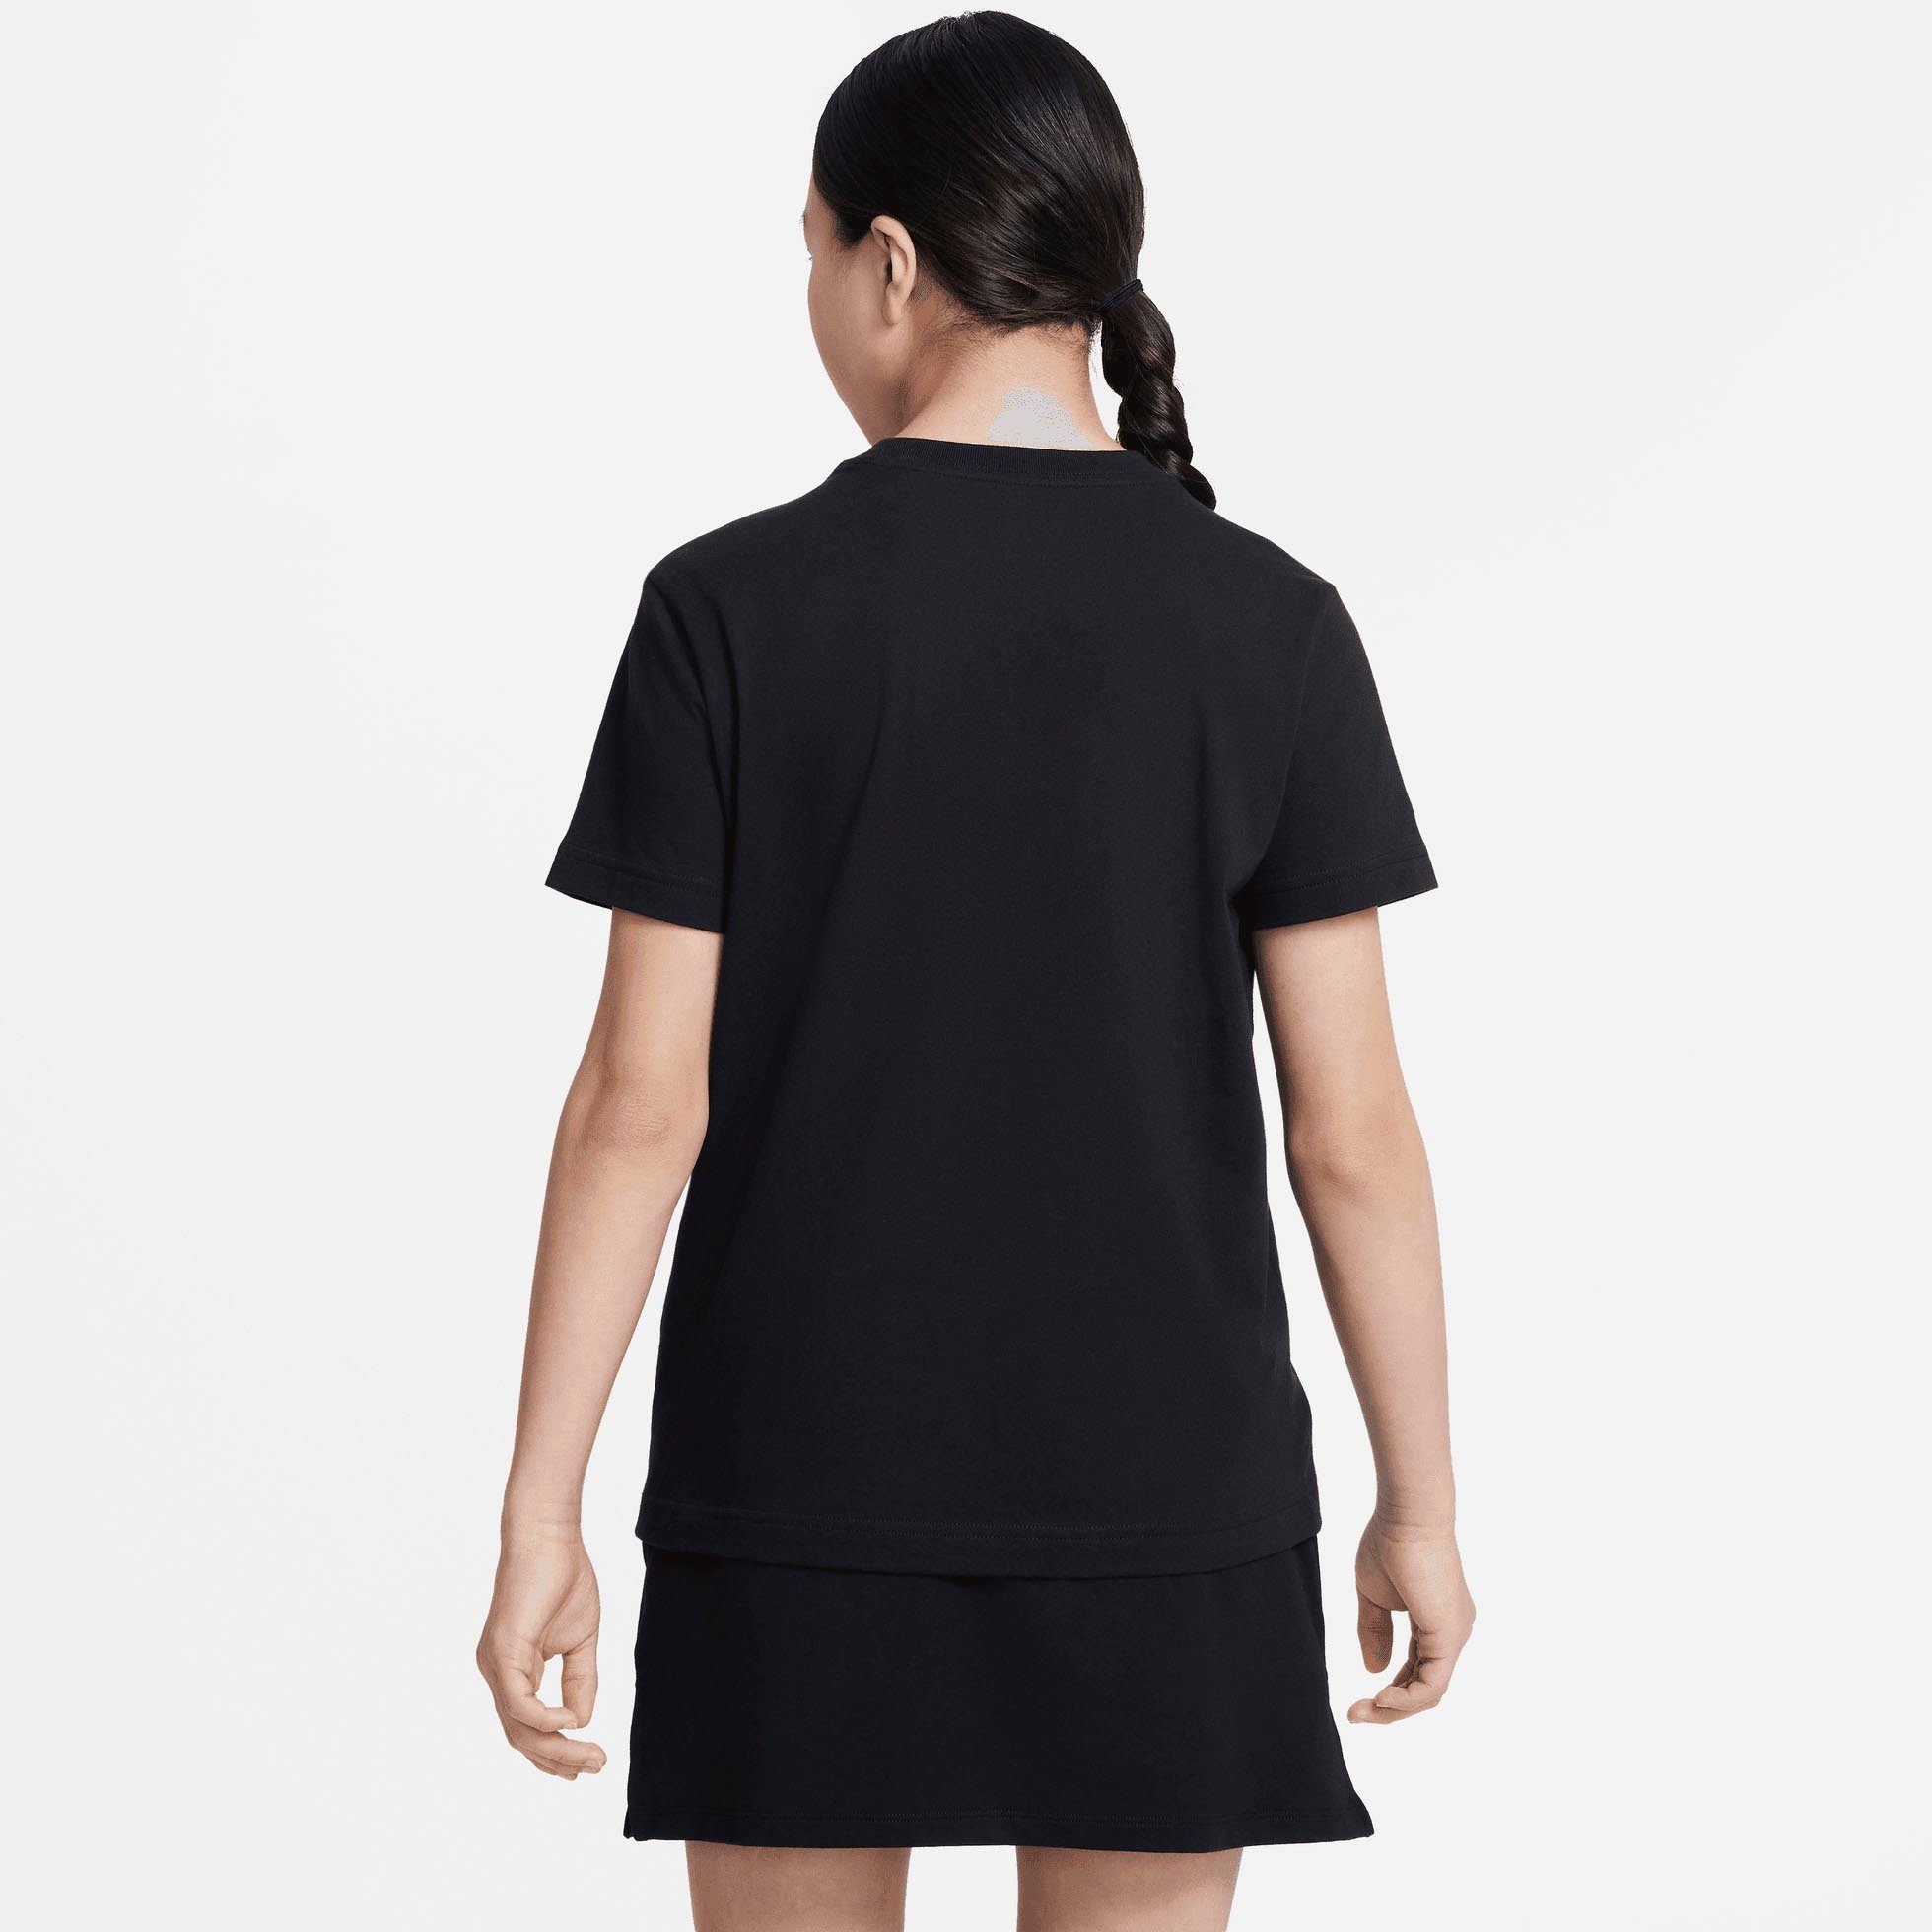 BIG (GIRLS) T-Shirt Nike T-SHIRT schwarz KIDS' Sportswear